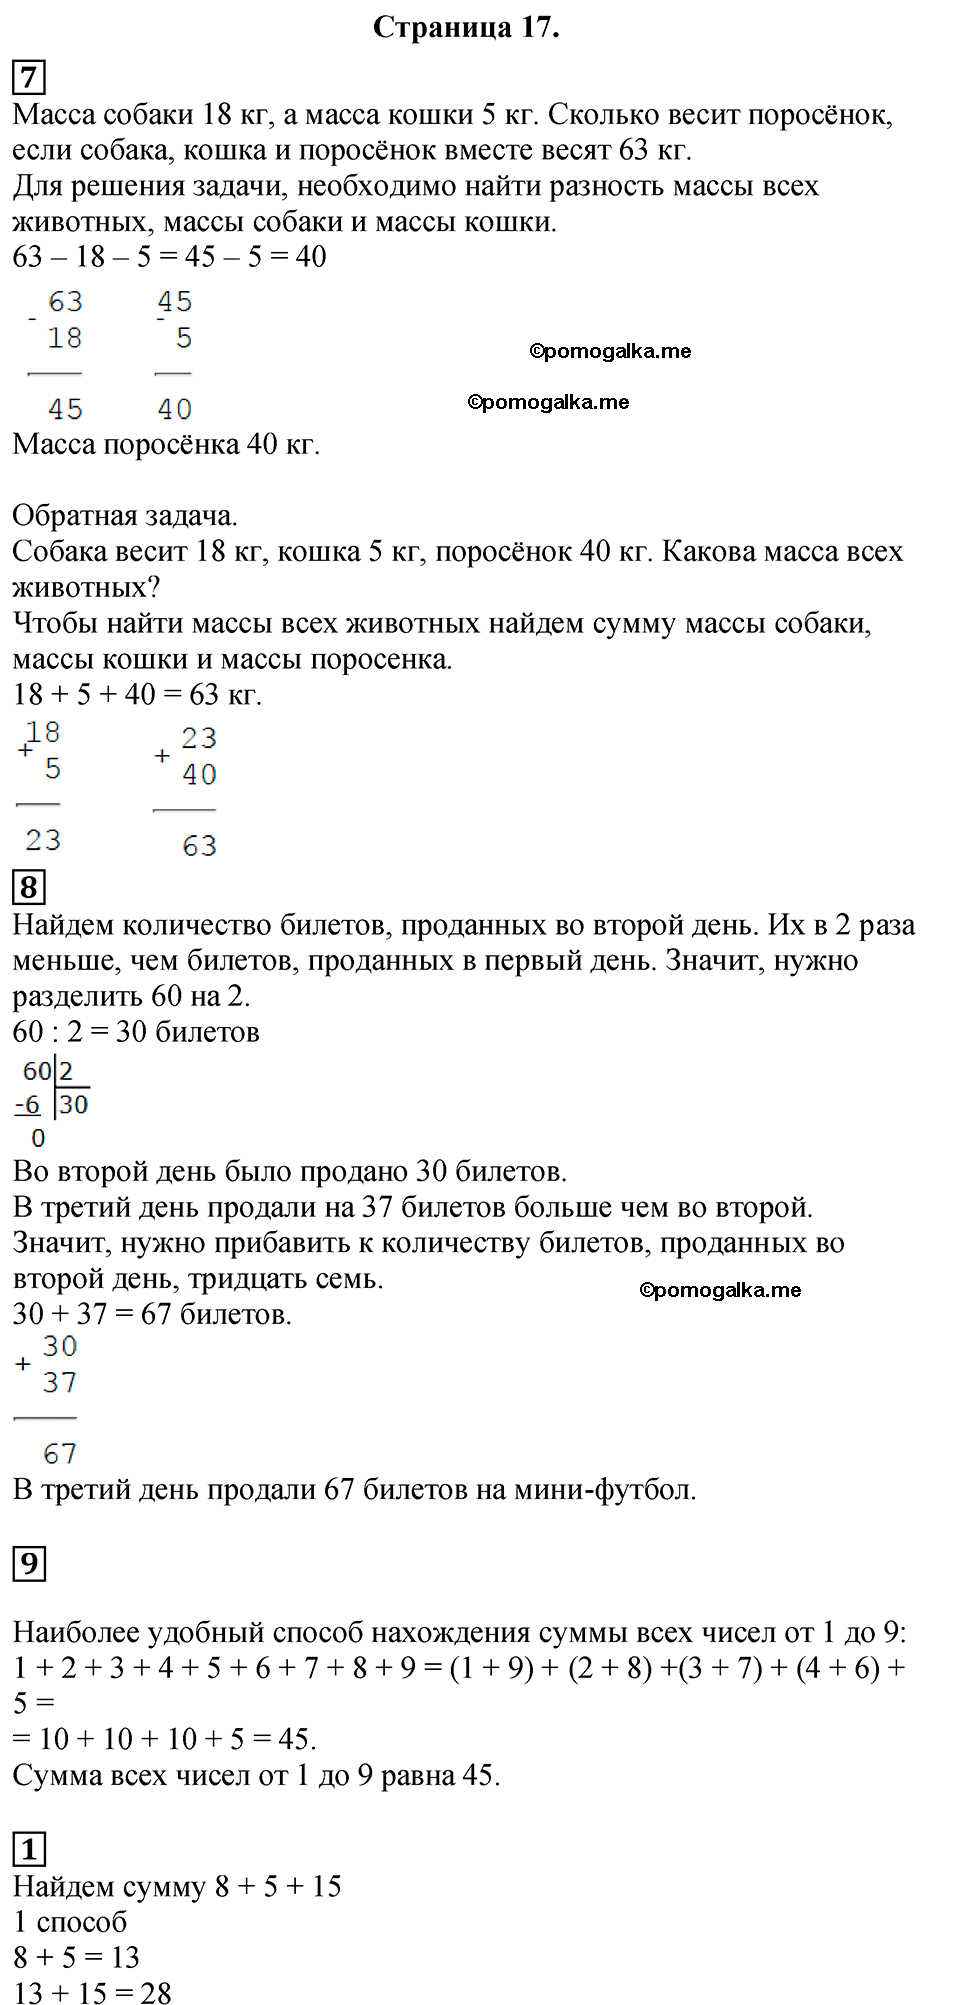 Страница №17 Часть 1 математика 3 класс Дорофеев